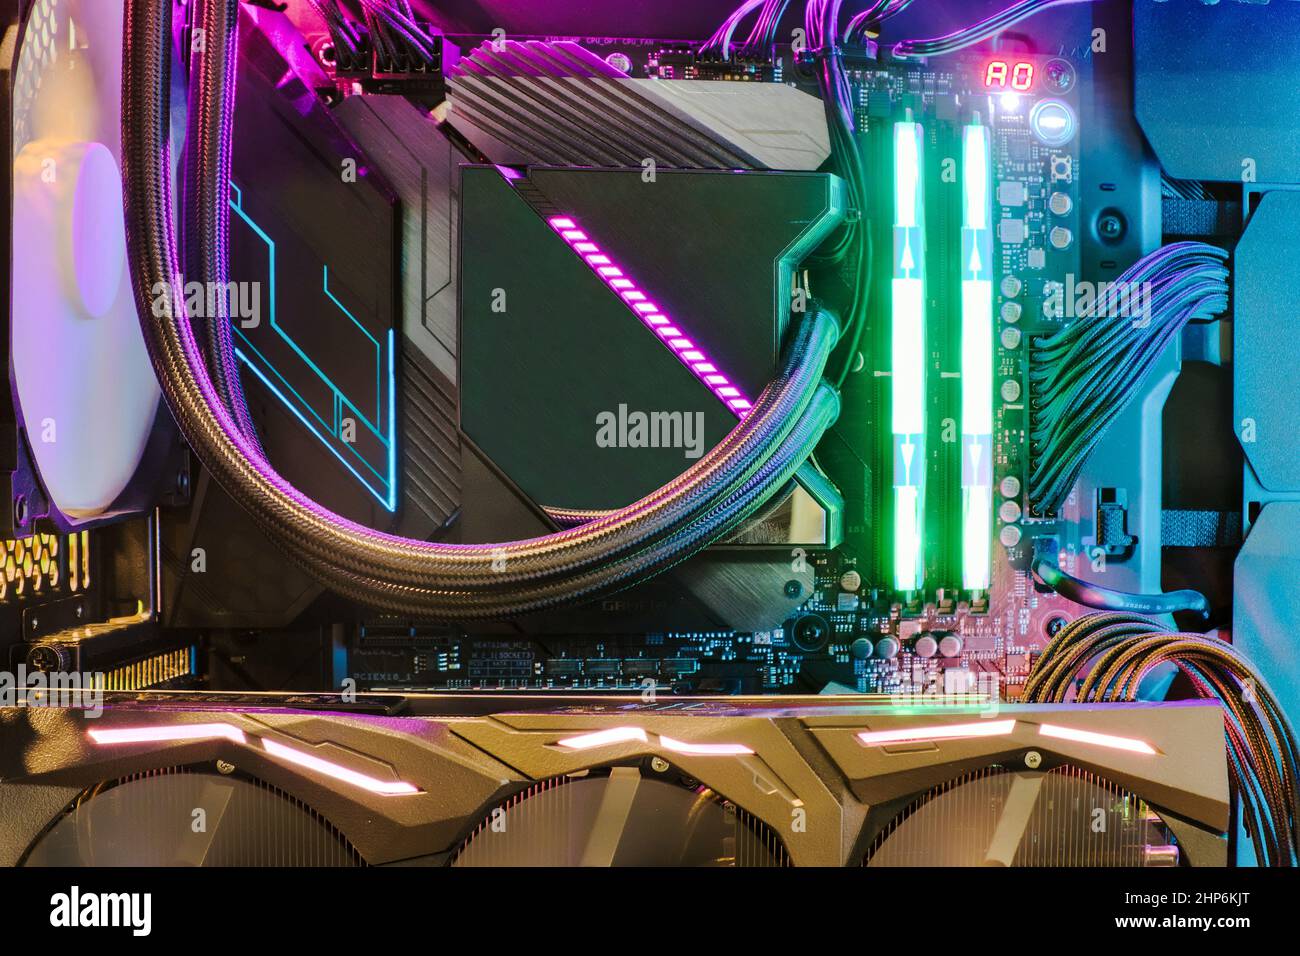 Primo piano e all'interno del PC desktop Gaming e sistema CPU con ventola di raffreddamento e LED RGB multicolore per mostrare lo stato in modalità di lavoro Foto Stock